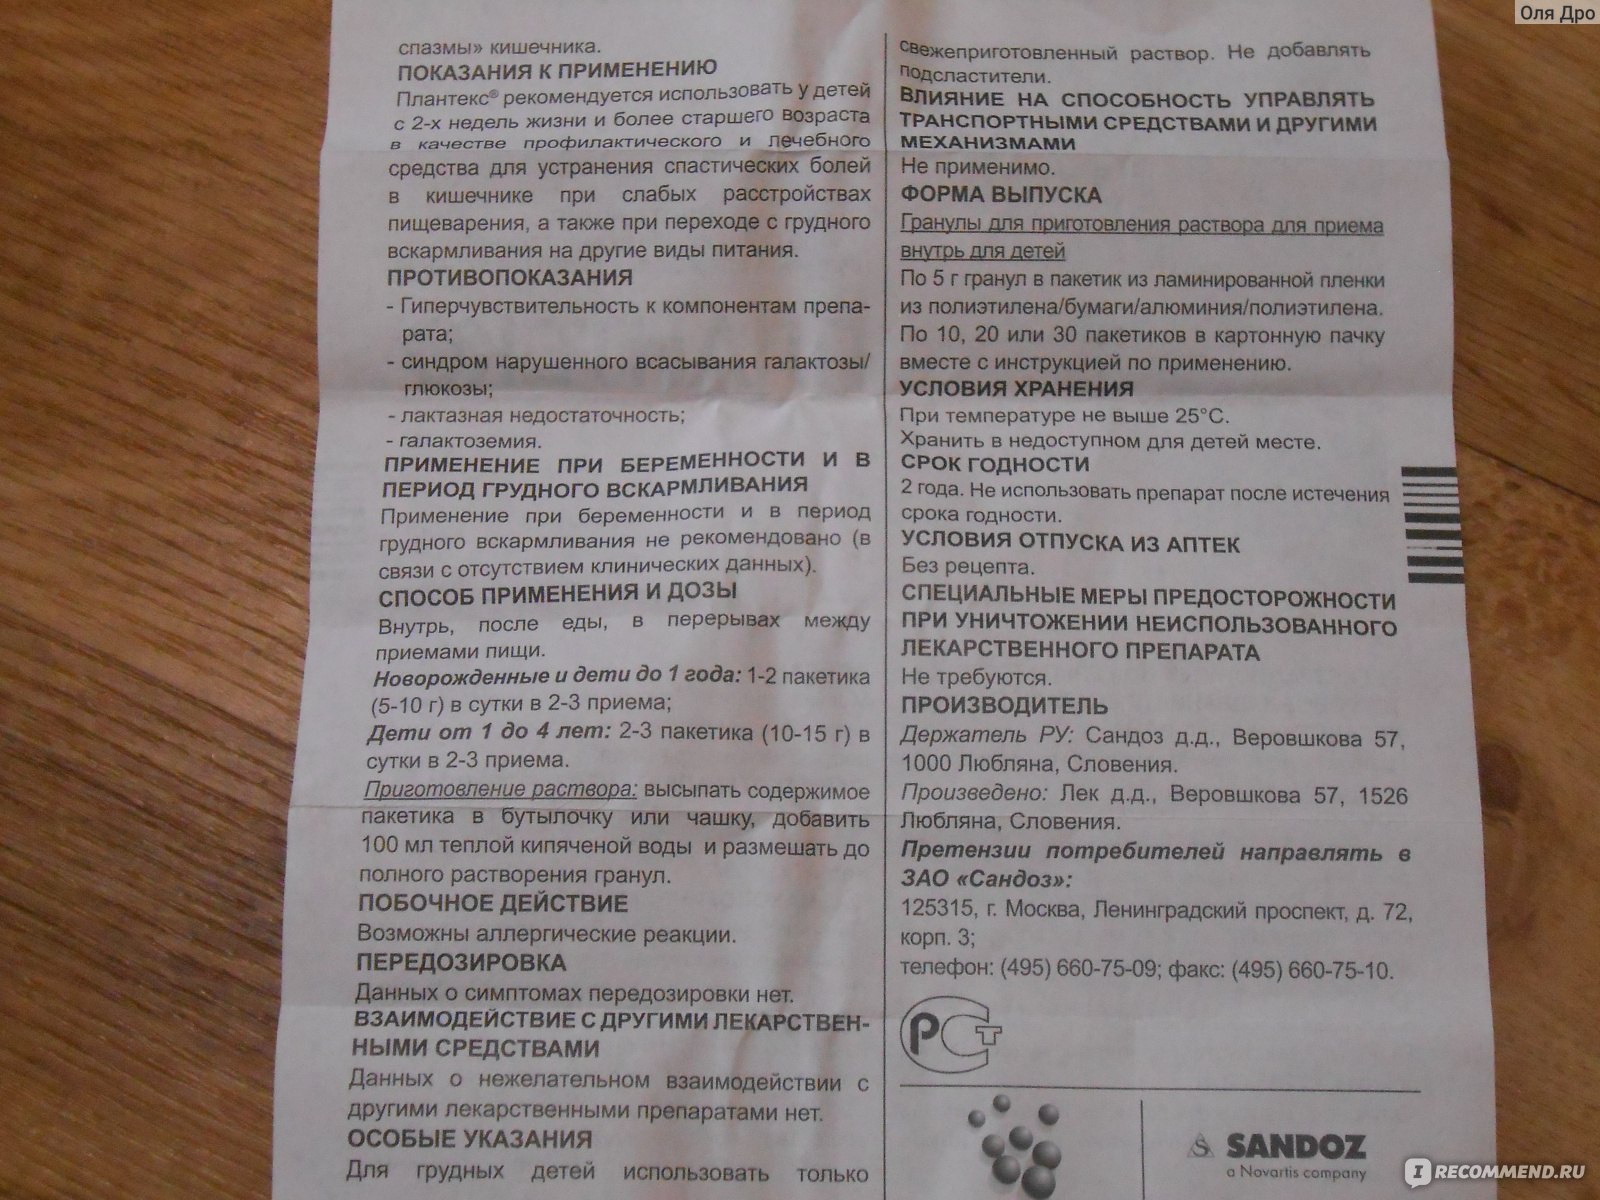 Плантекс для новорожденных: инструкция по применению, состав, как давать чай плантекс грудничку / mama66.ru